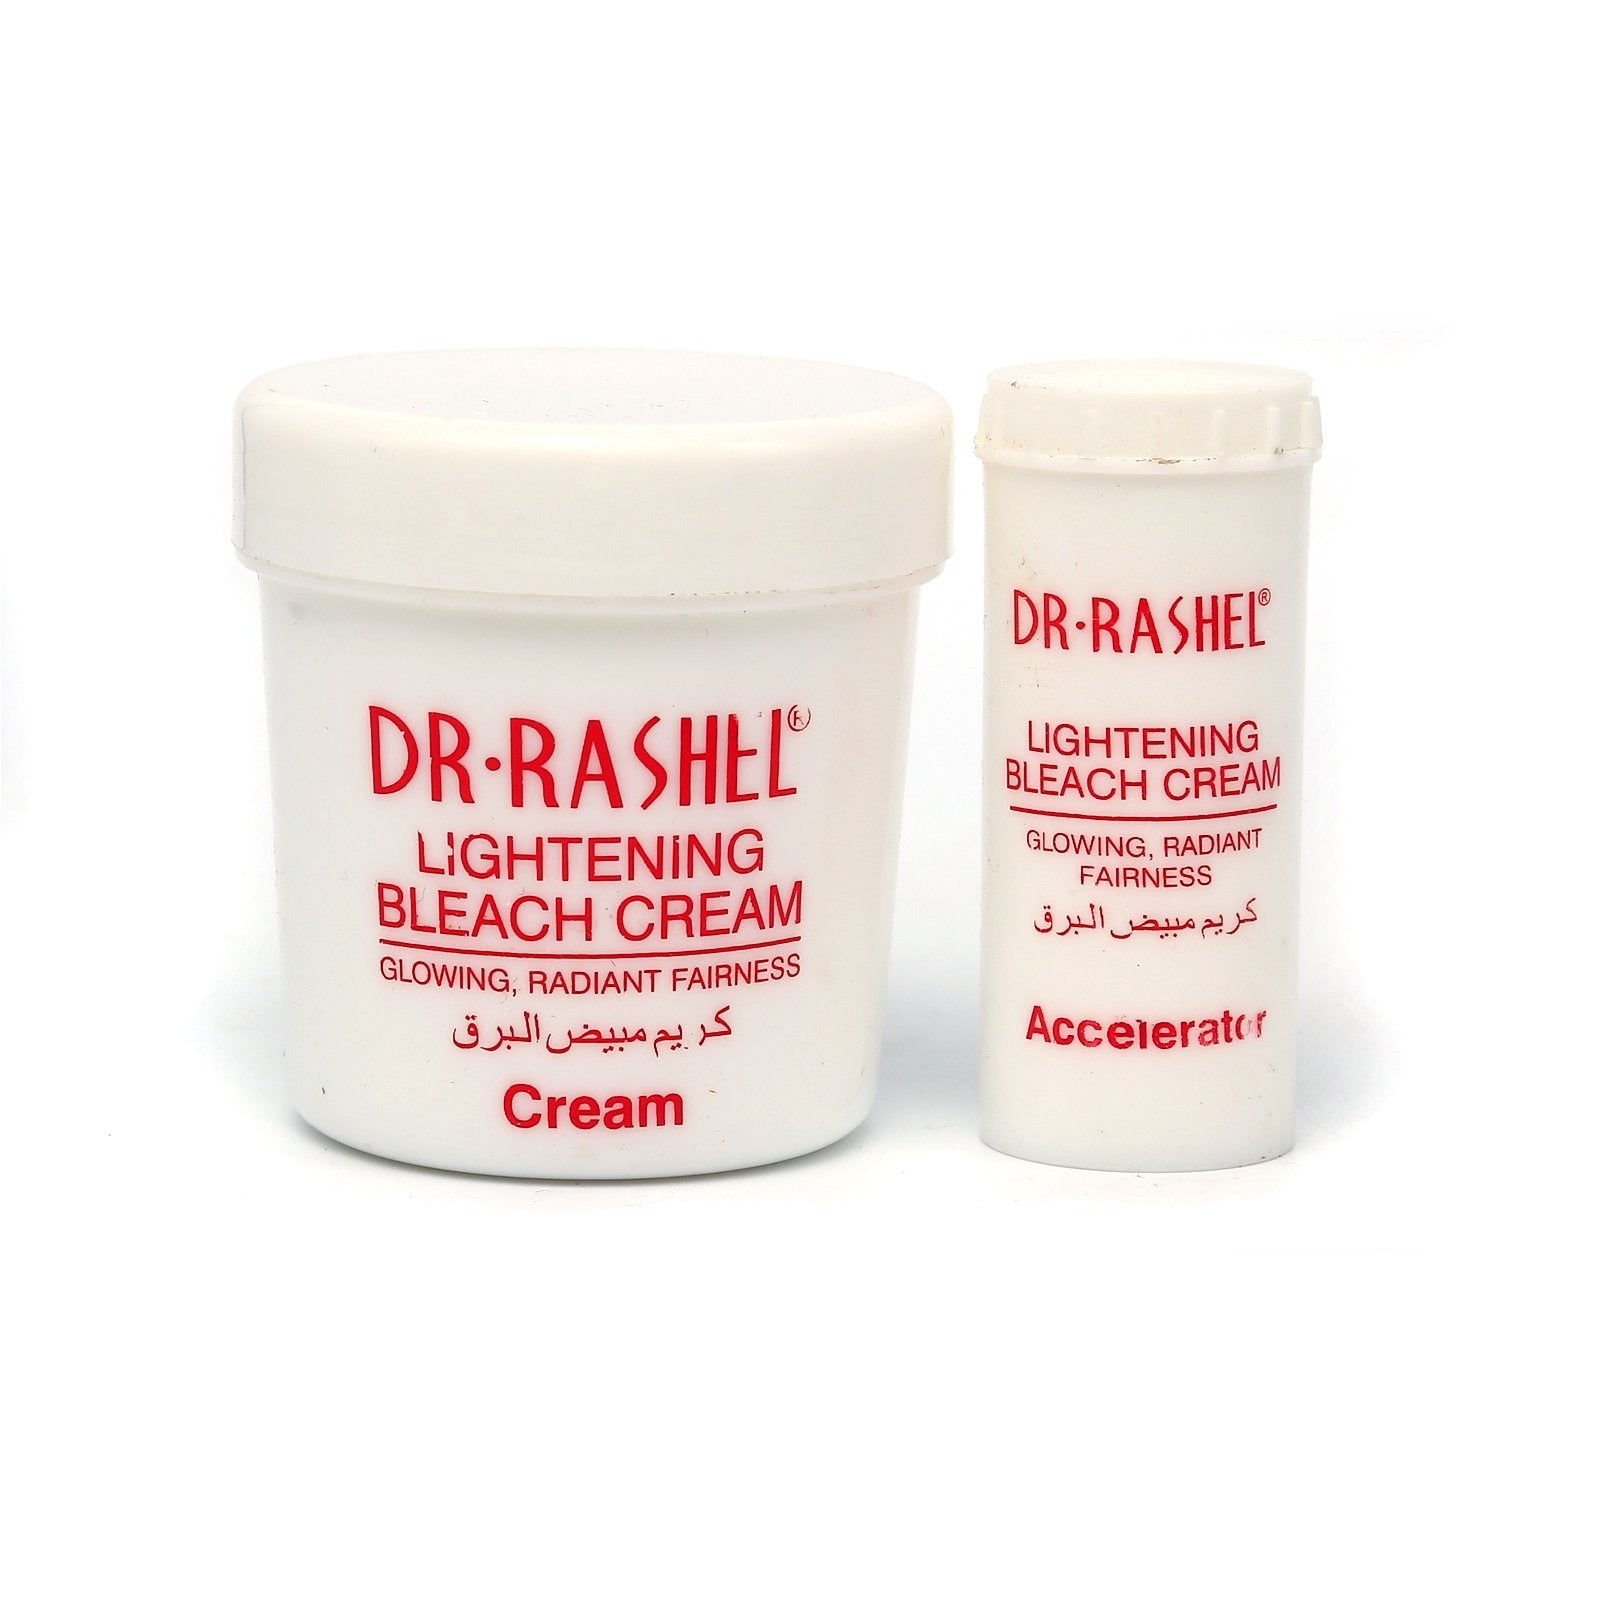 Dr Rashel Bleach Cream Lightening White Skin freeshipping - lasertag.pk